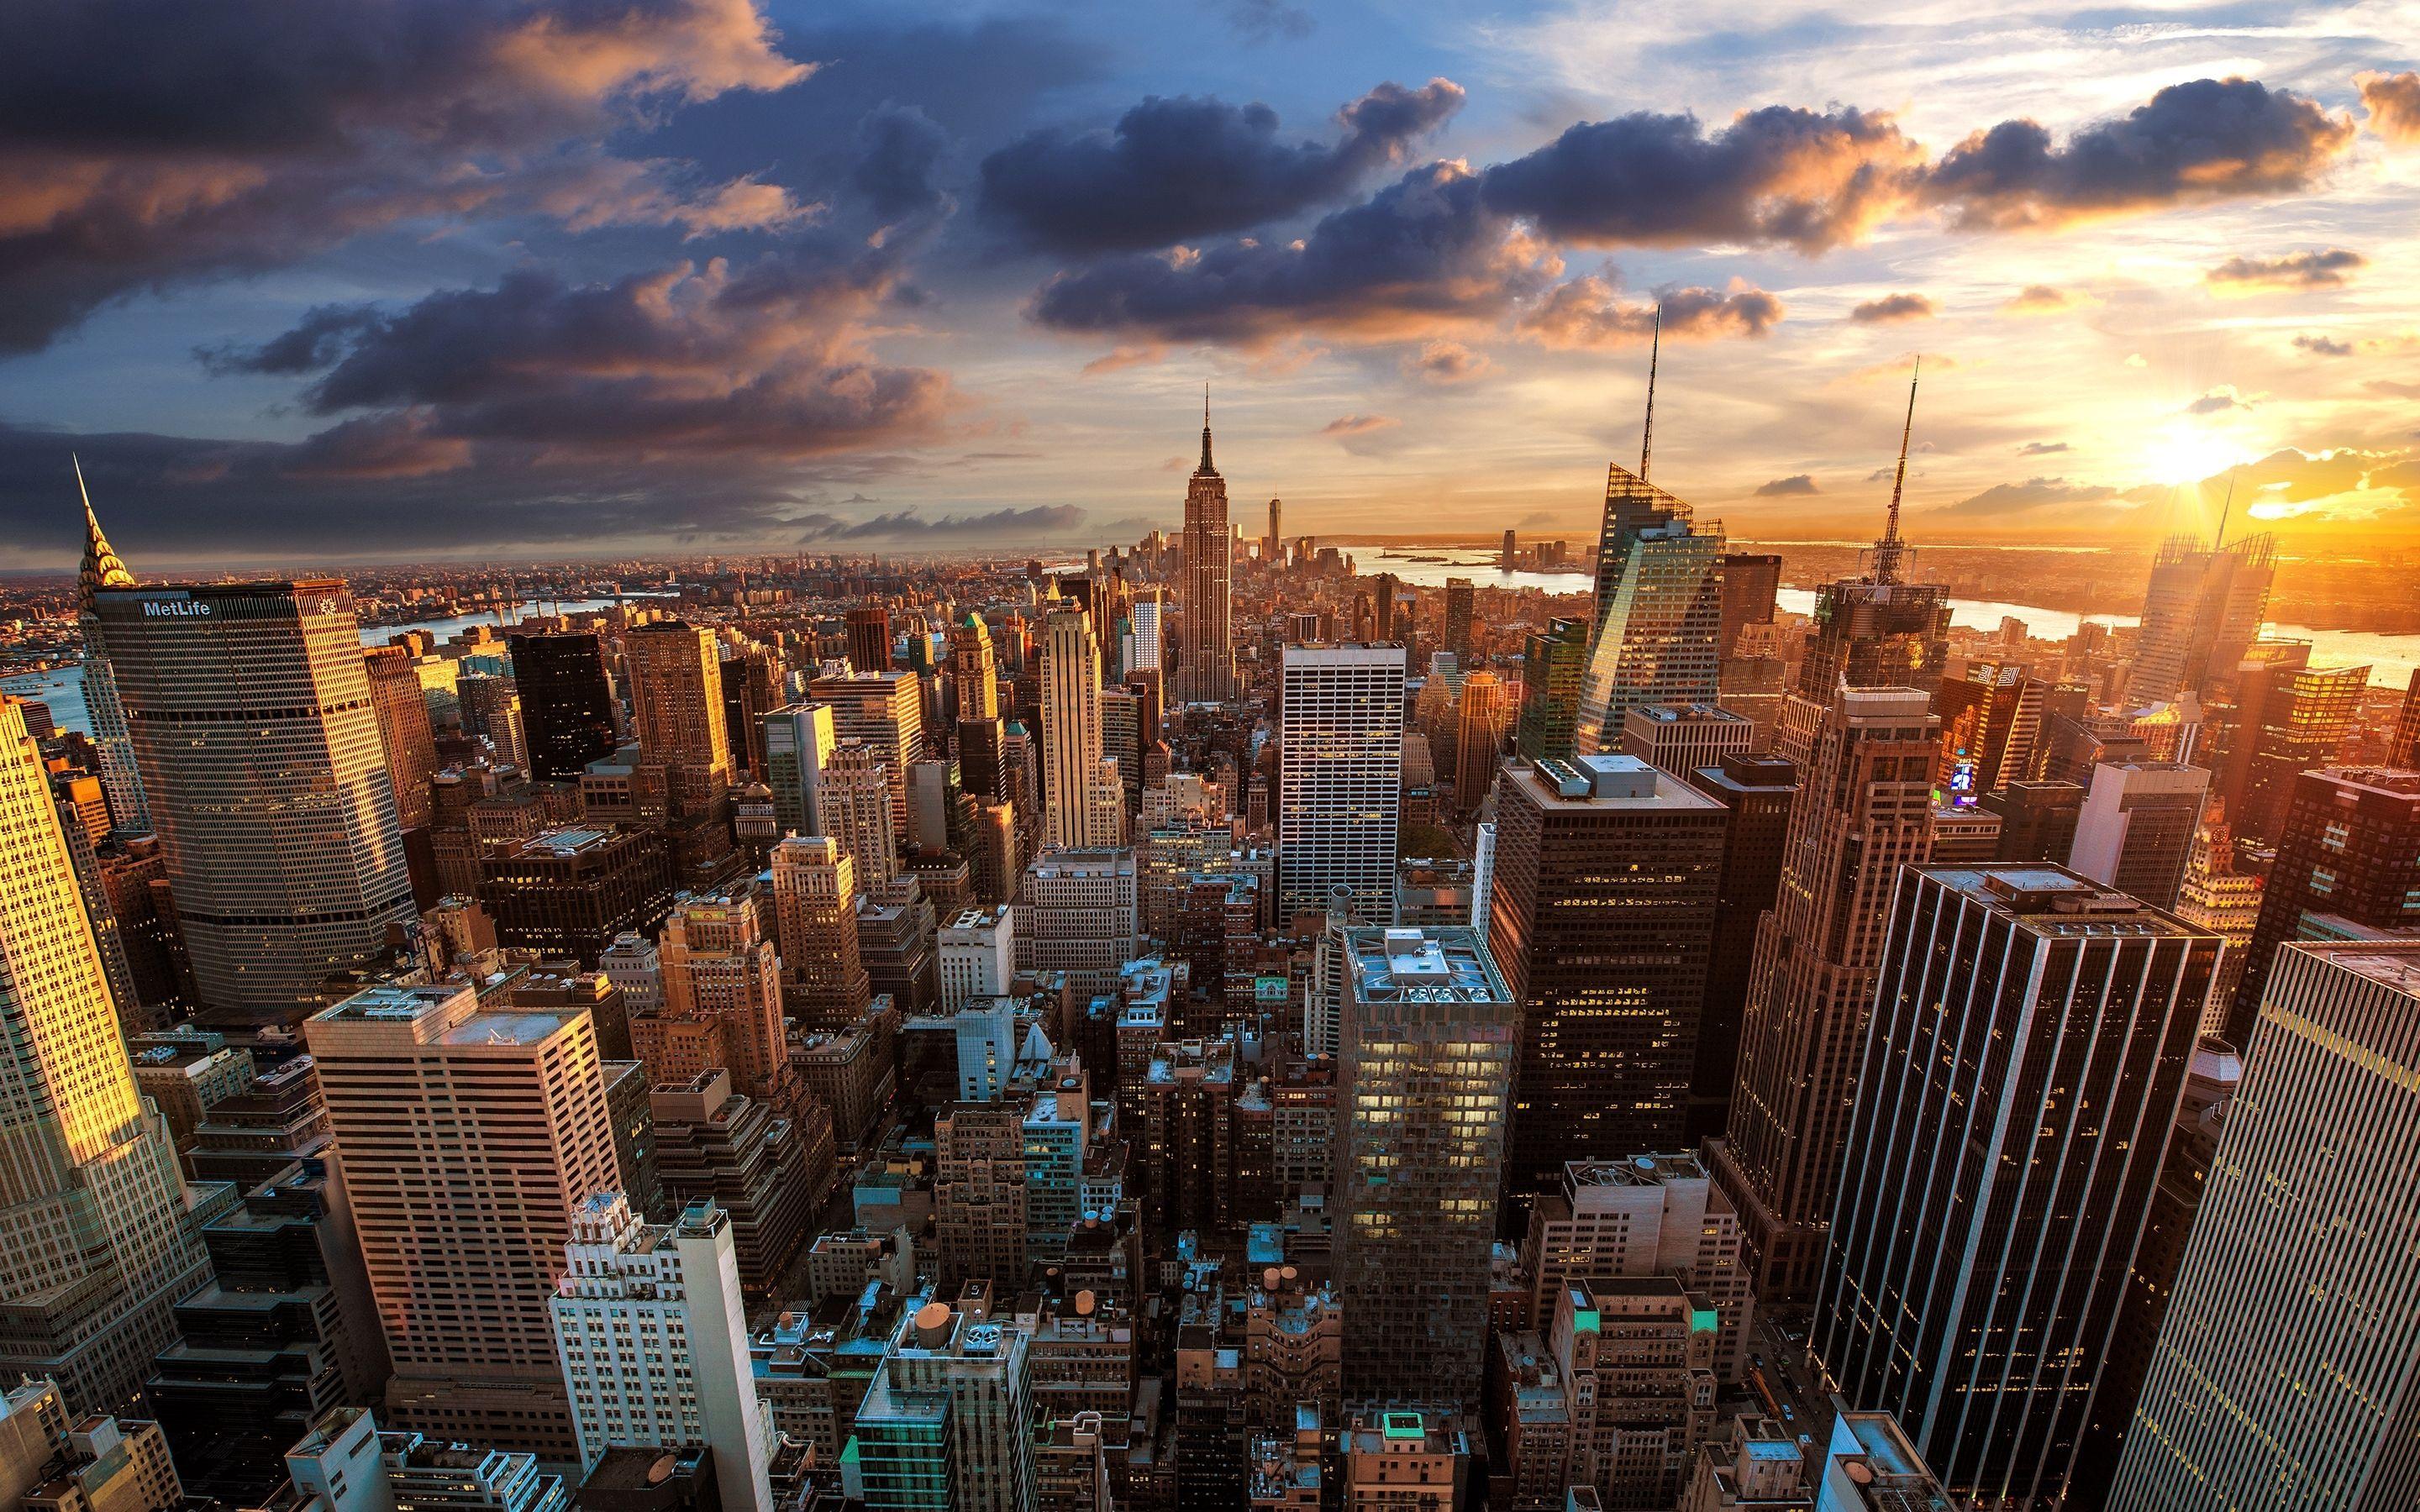 Nếu bạn muốn đưa thành phố New York vào chiếc máy tính của mình, hãy xem qua các hình nền desktop về Skyline. Với độ phân giải cao, bạn sẽ thấy được những tòa nhà nổi tiếng của thành phố như Empire State Building và nhiều hơn thế nữa.